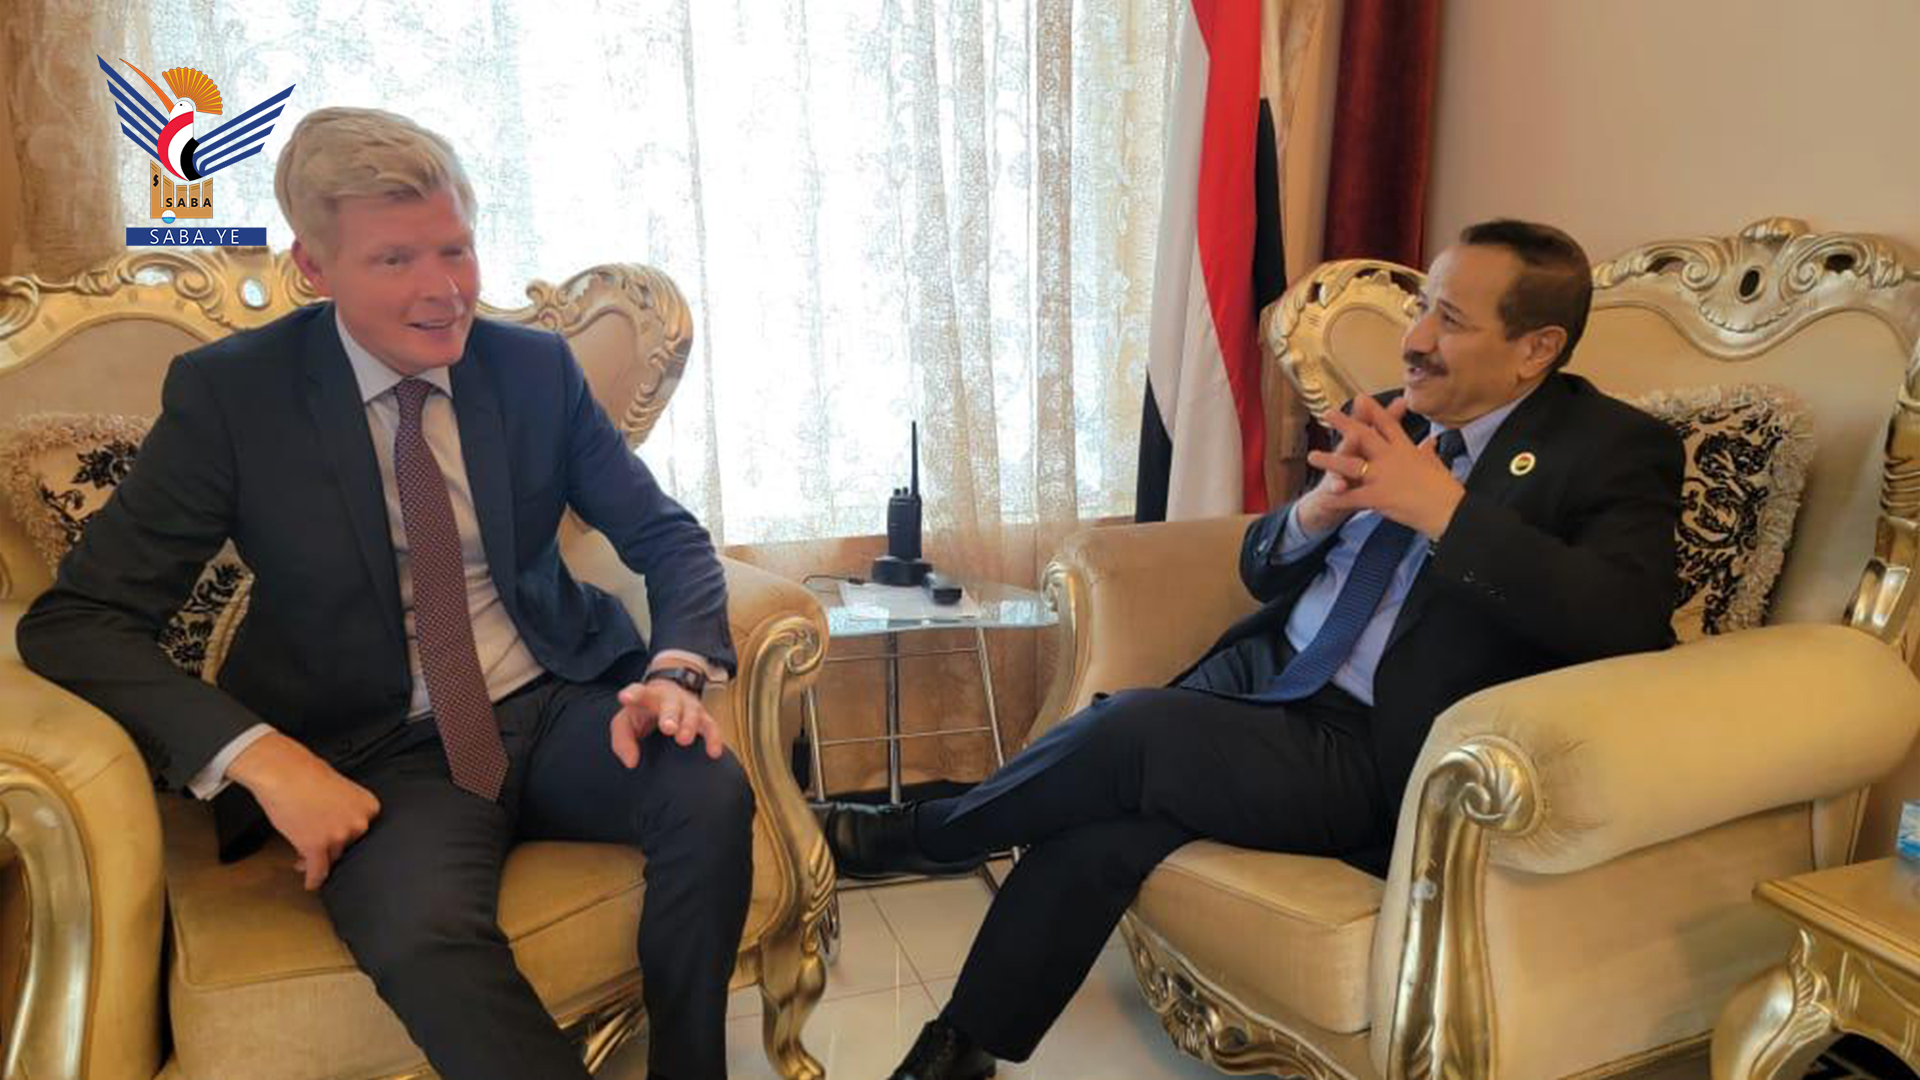 Der Außenminister trifft den Sonderbeauftragten des Generalsekretärs der Vereinten Nationen für den Jemen